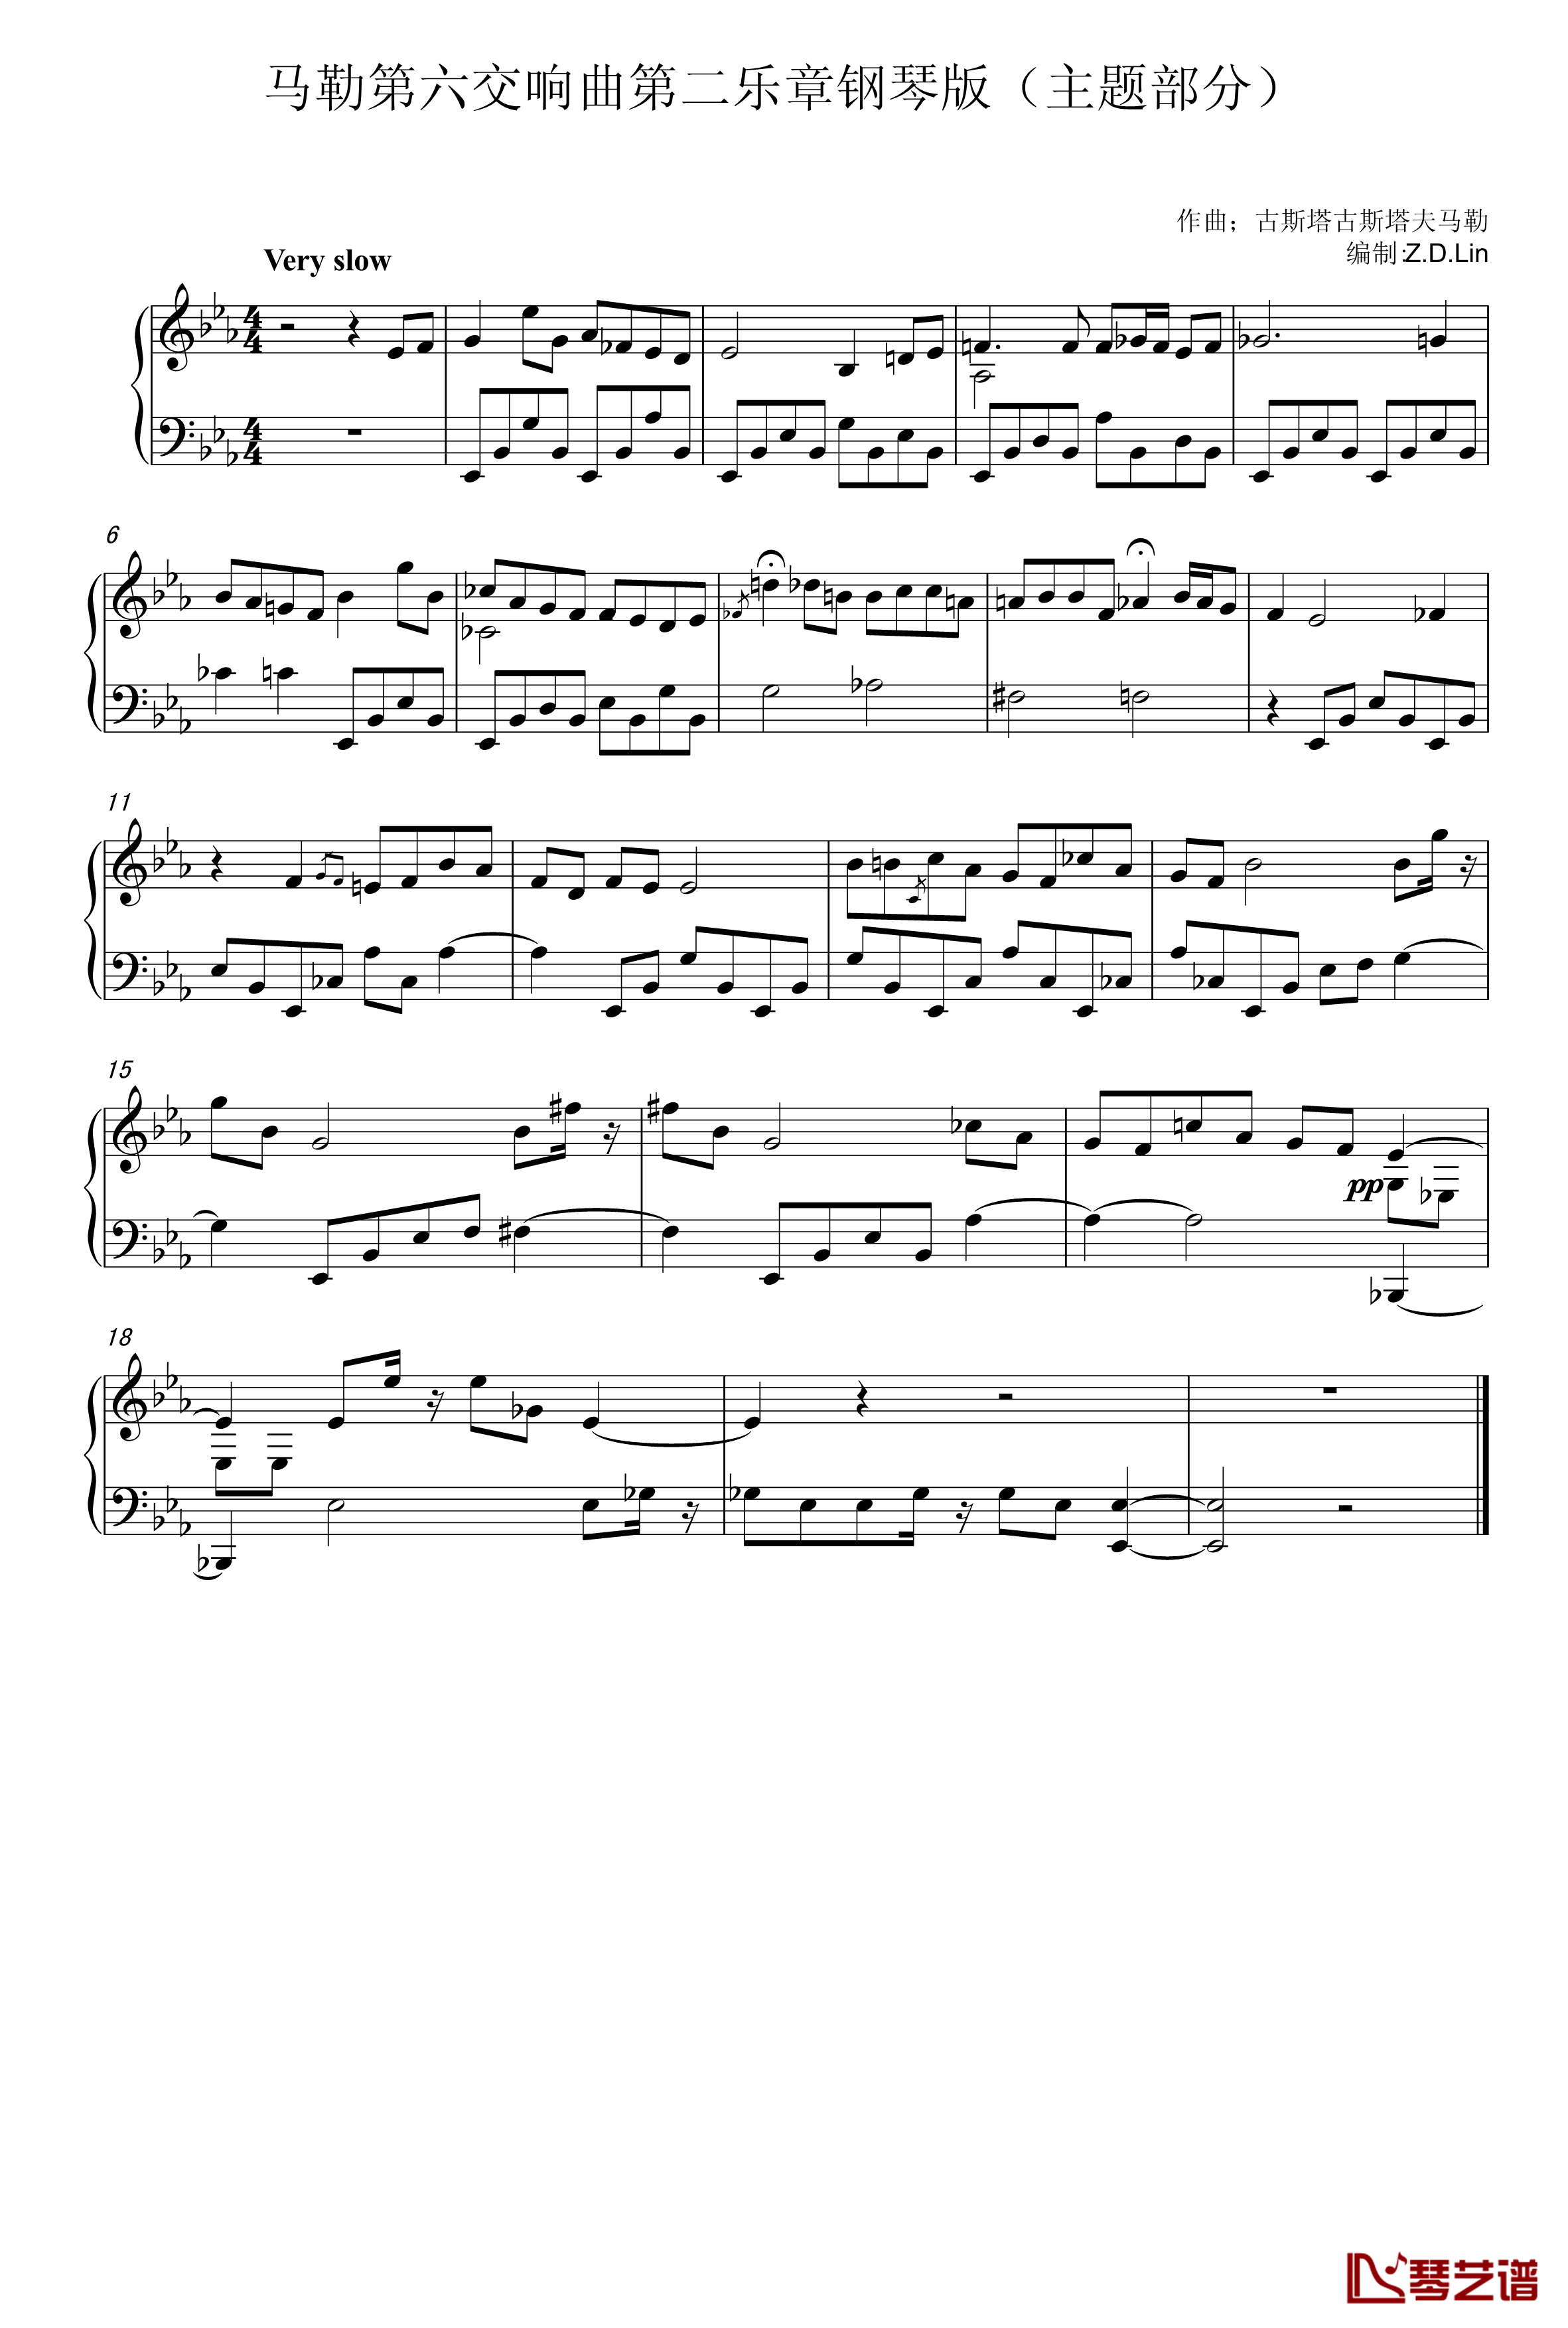 马勒第六交响曲第二乐章钢琴版钢琴谱-主题部分-古斯塔夫马勒1